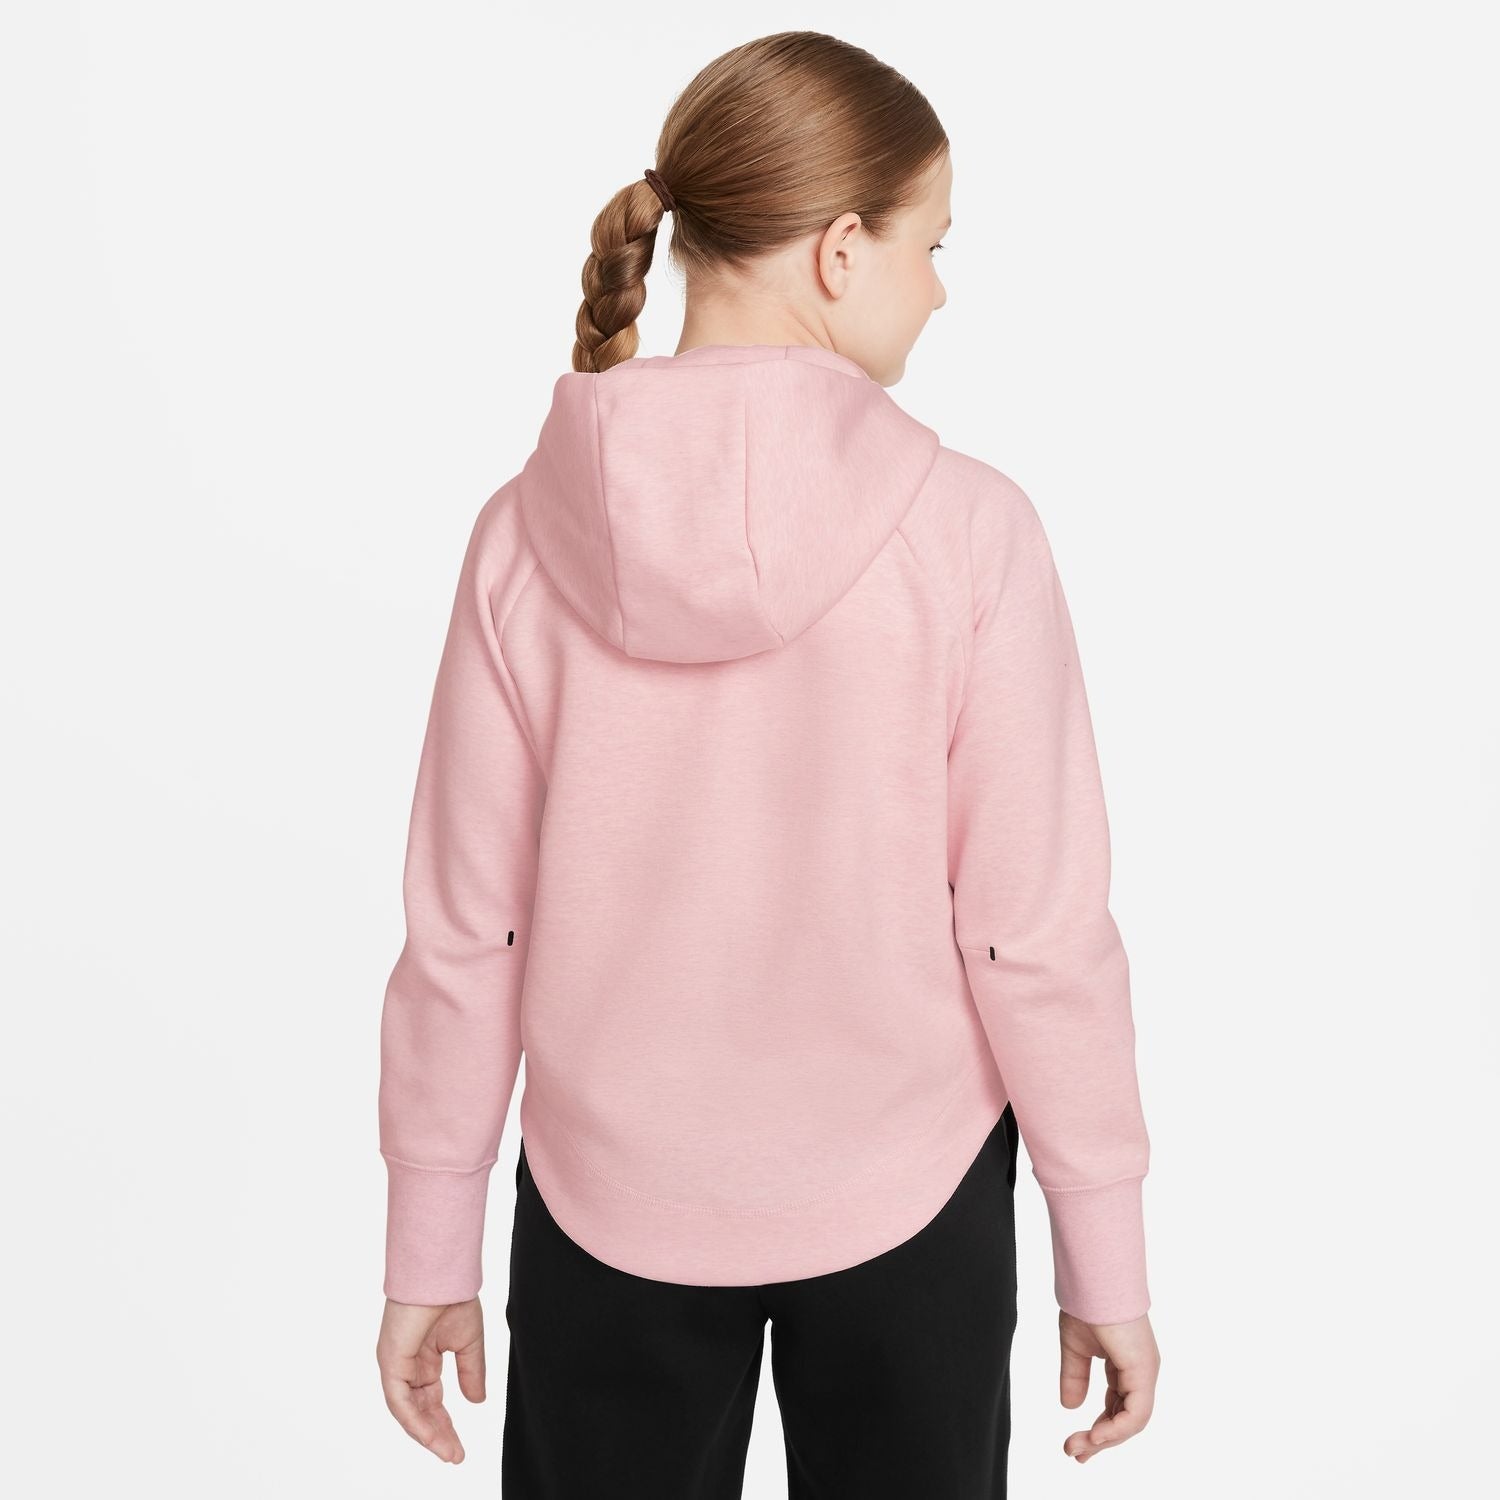 nike-kids-sportswear-tech-fleece-hoodie-cz2570-663